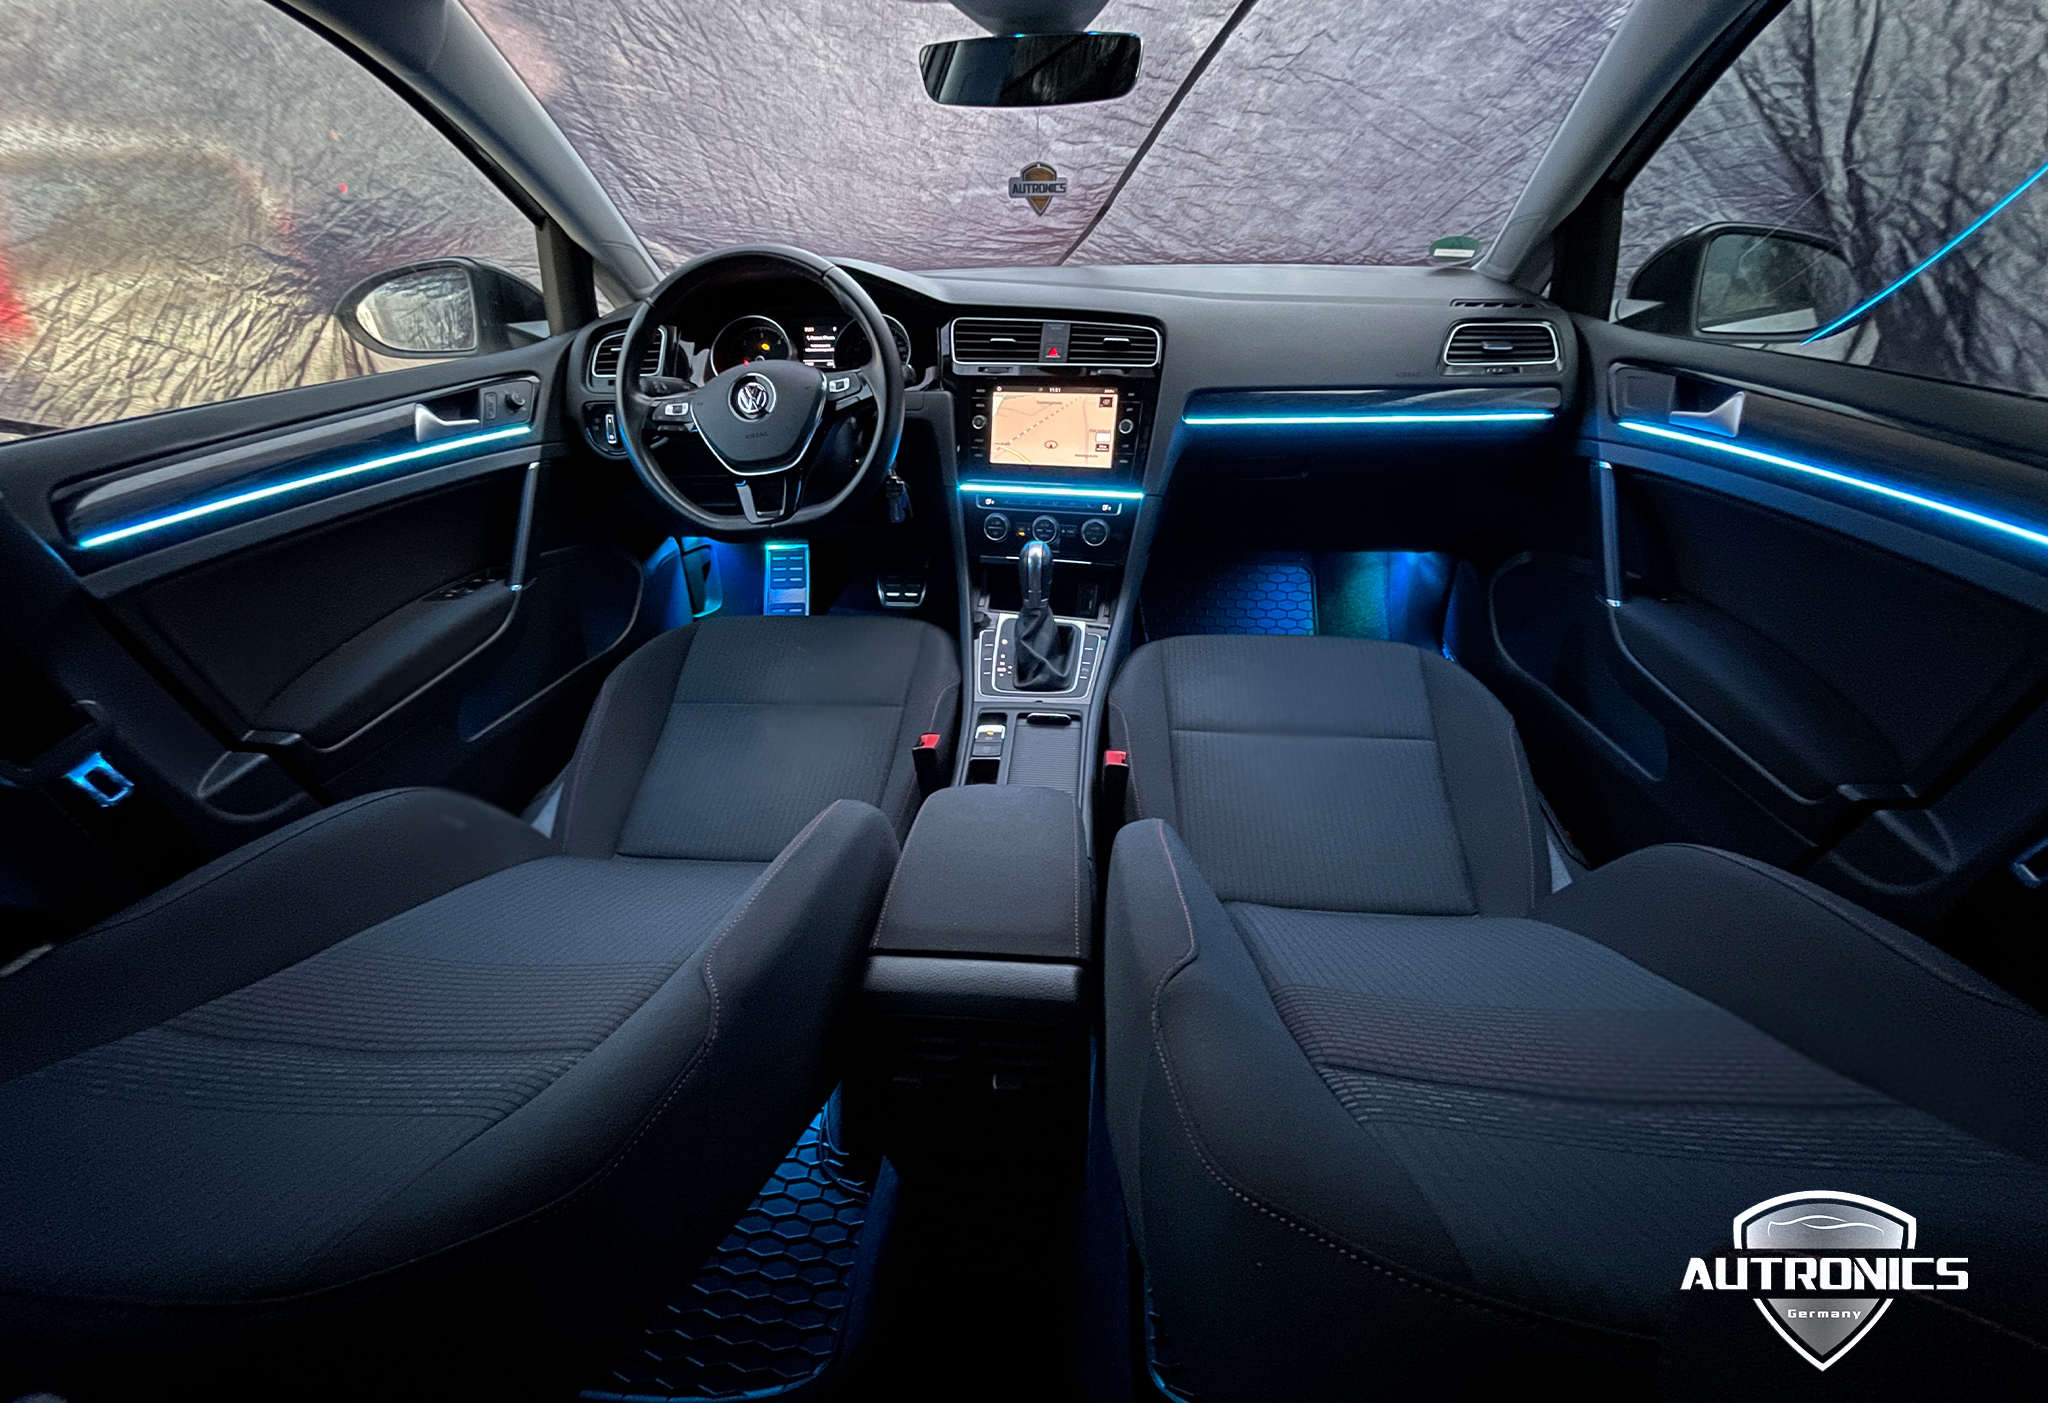 Ambientebeleuchtung Nachrüsten im Auto Innenraumbeleuchtung Beleuchtung geeignet für VW Golf 7 01